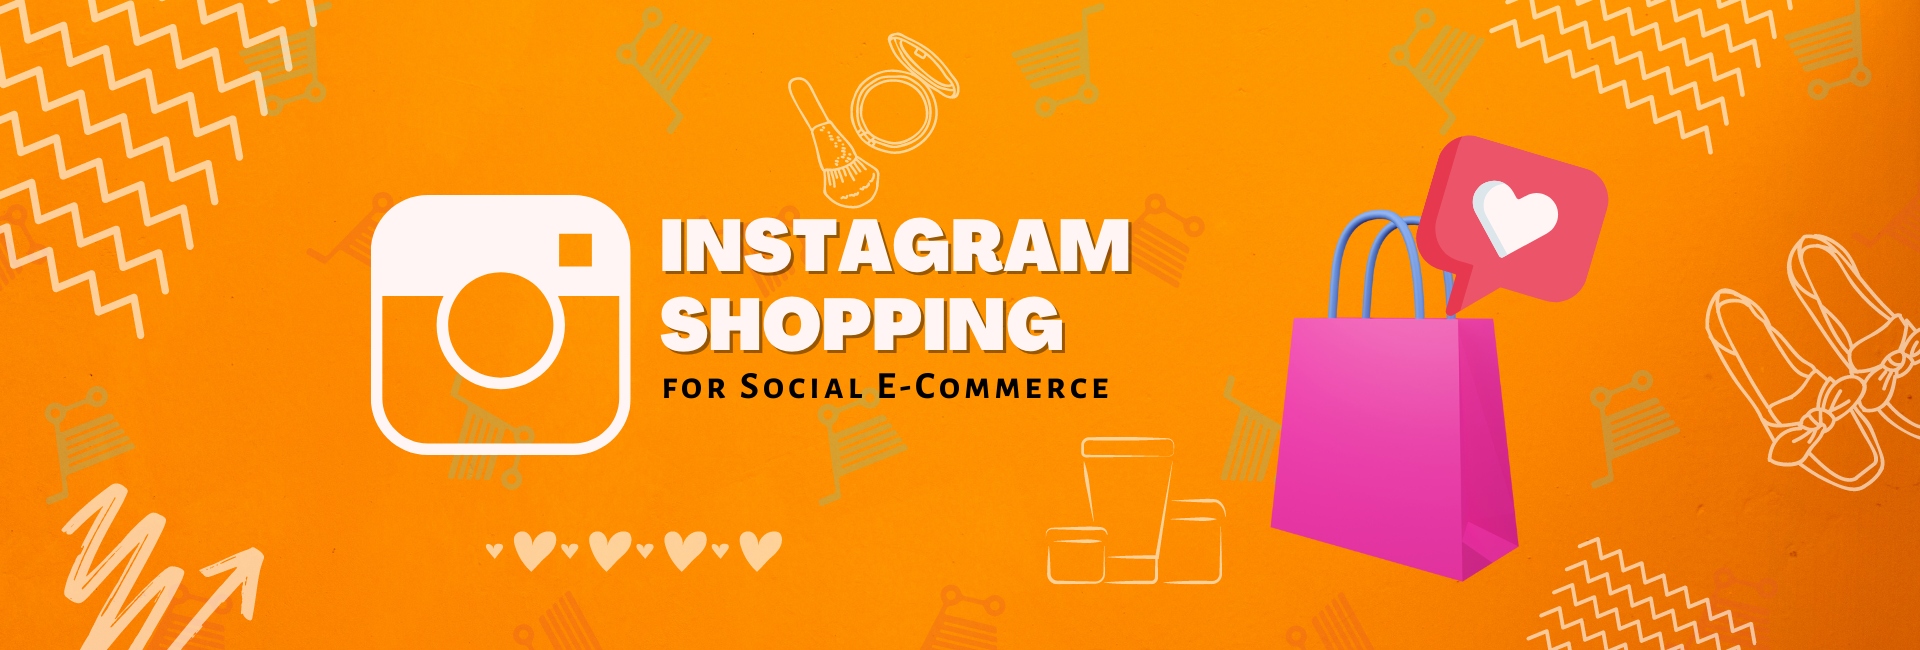 Instagram Shopping for Social E-Commerce